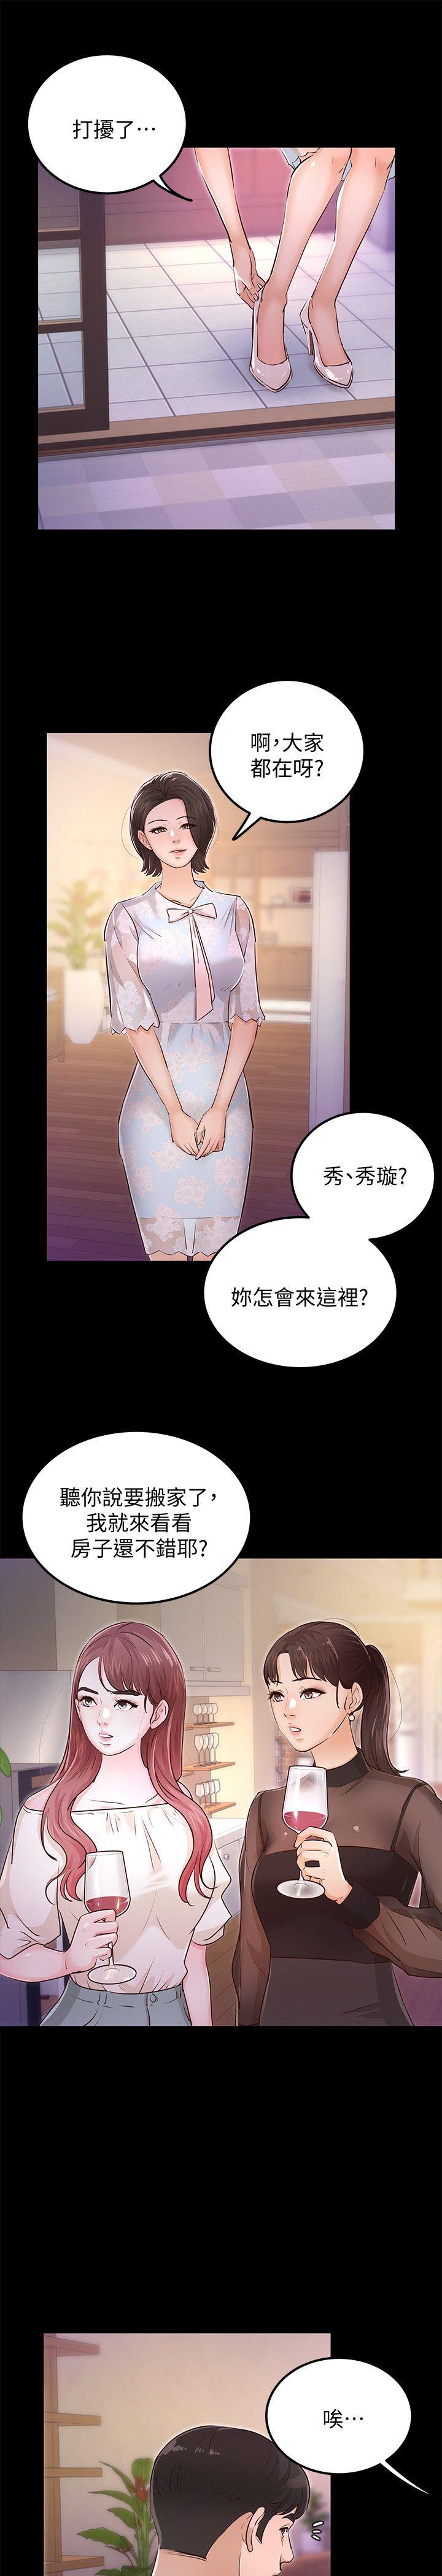 韩国污漫画 養女 最终话-专属于我的女秘书 9